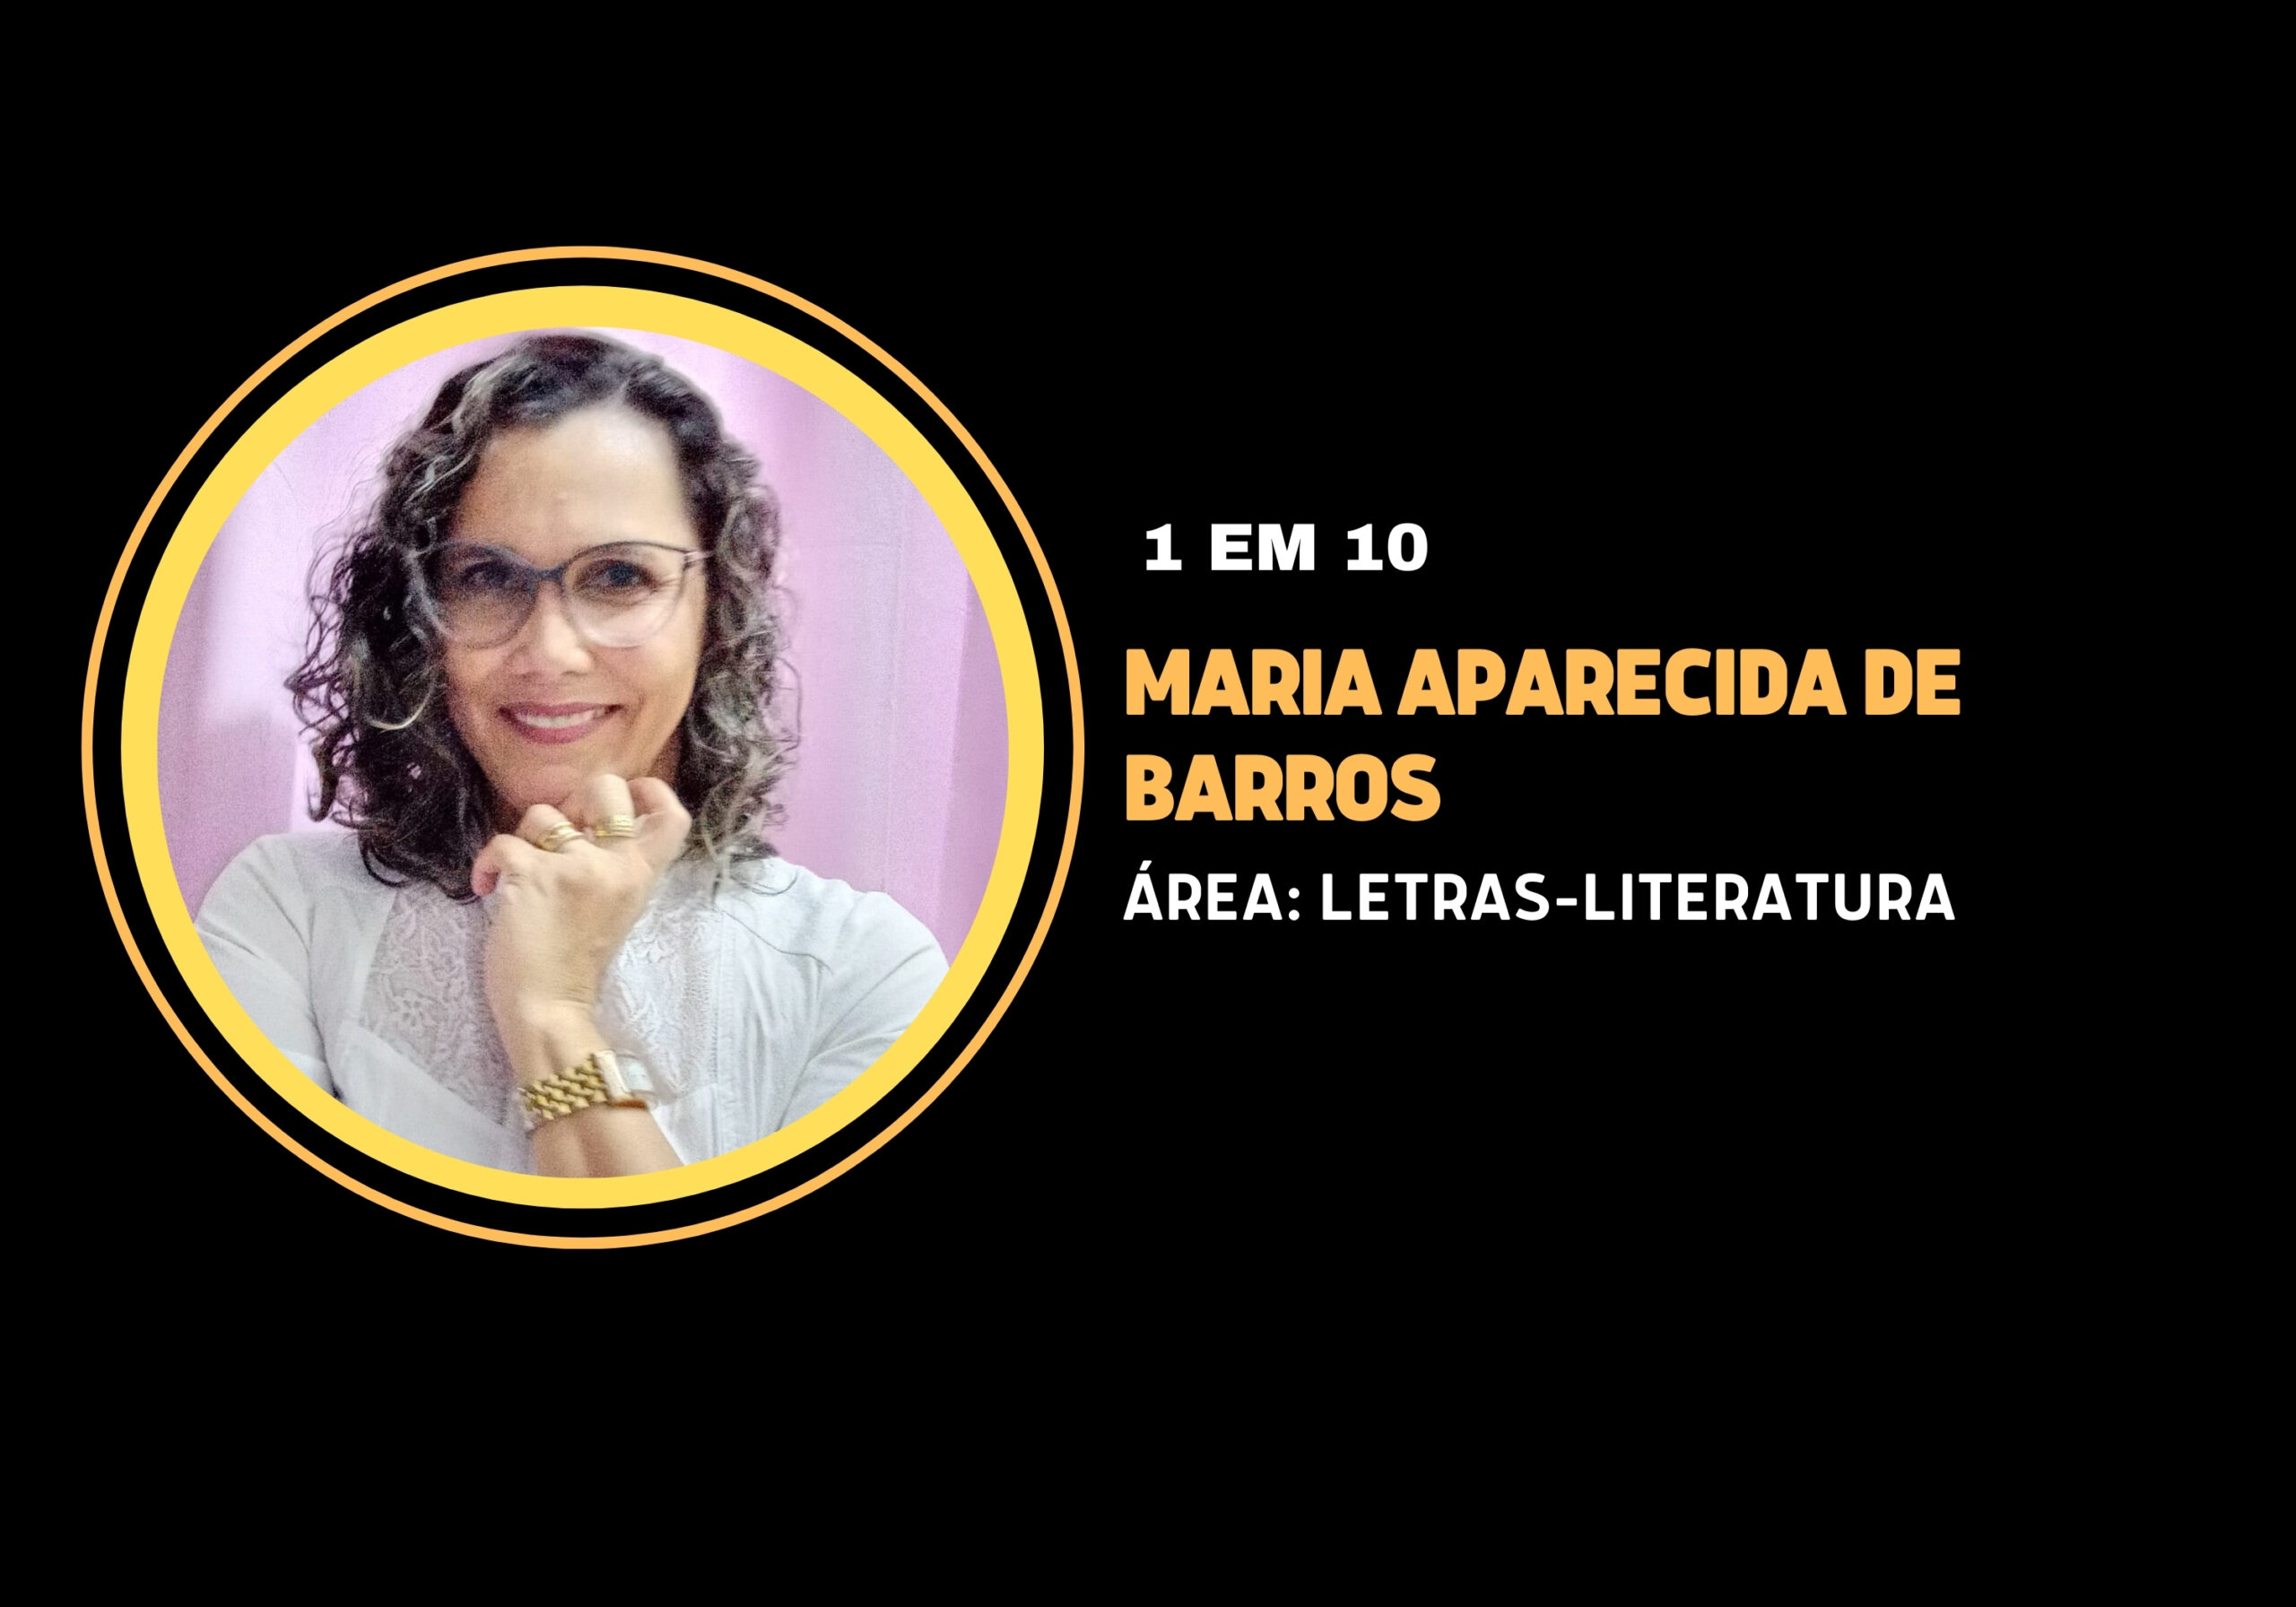 Maria Aparecida de Barros | 1 em 10